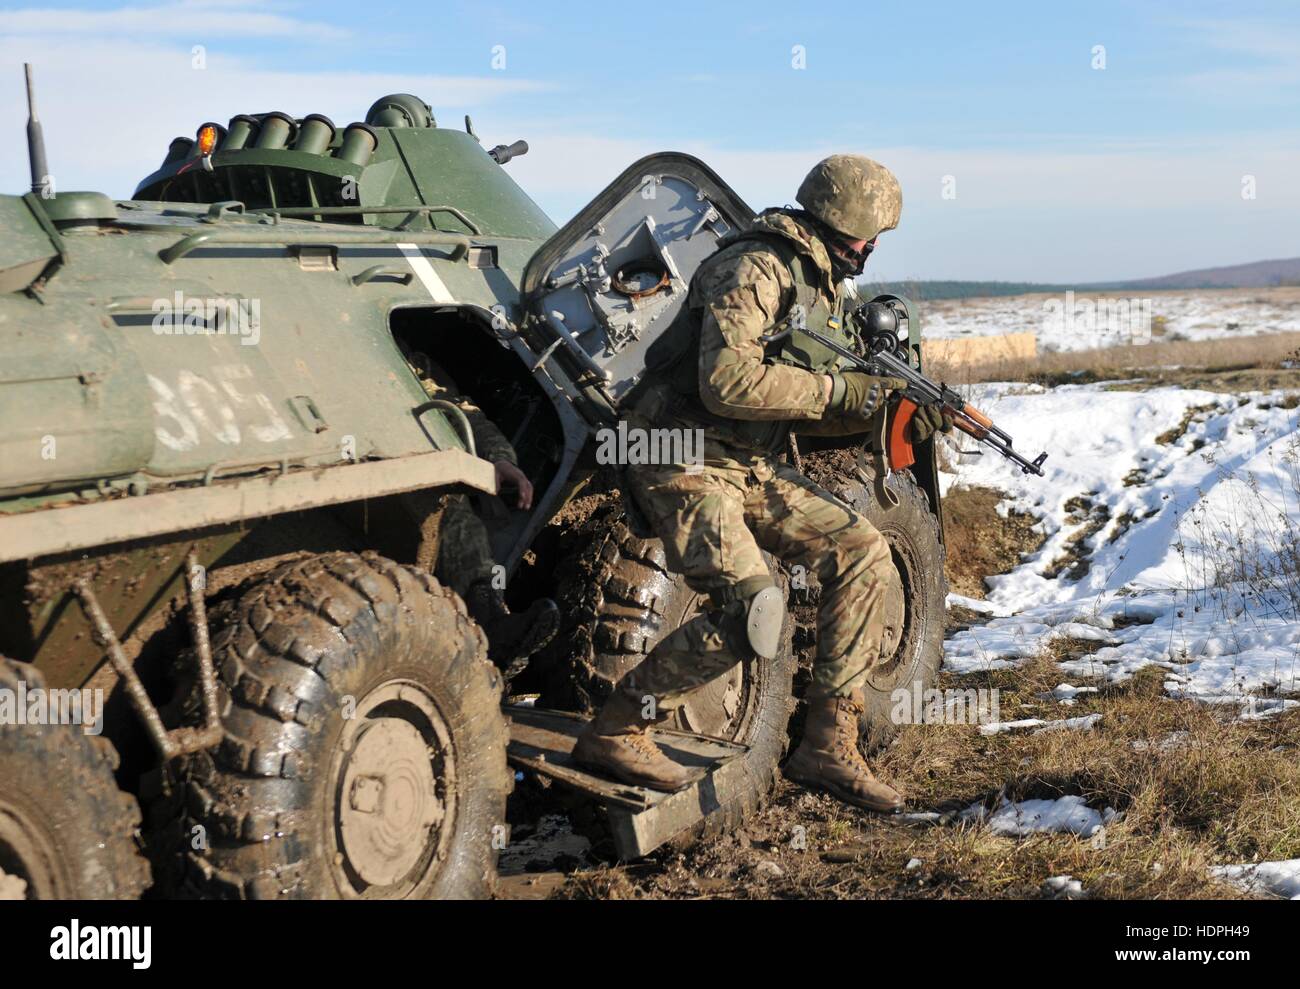 Un soldat américain saute hors d'un véhicule de transport de troupes BTR véhicule lors d'un tir de suppression de l'entraînement à la sécurité internationale et de maintien de la paix 18 Novembre, 2016 Centre de l'viv, Ukraine. Banque D'Images